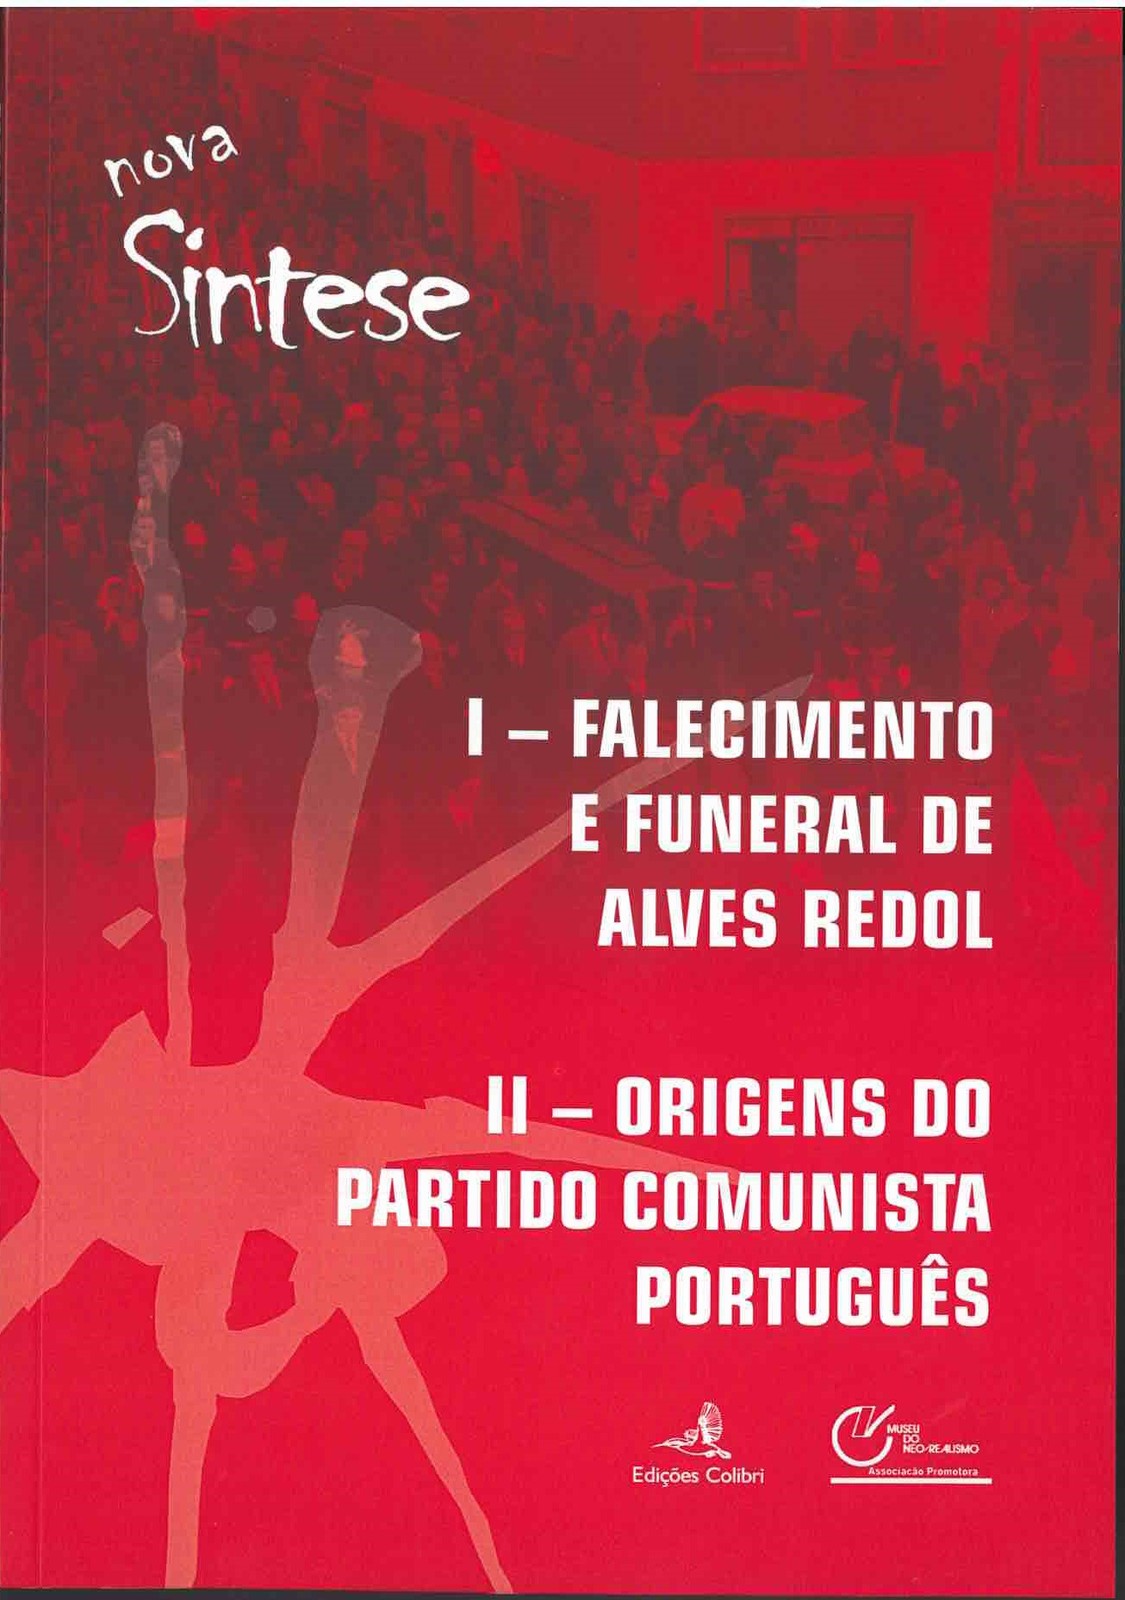 Nova Síntese “I – Falecimento e Funeral de Alves Redol/II- Origens do Partido Comunista Português”